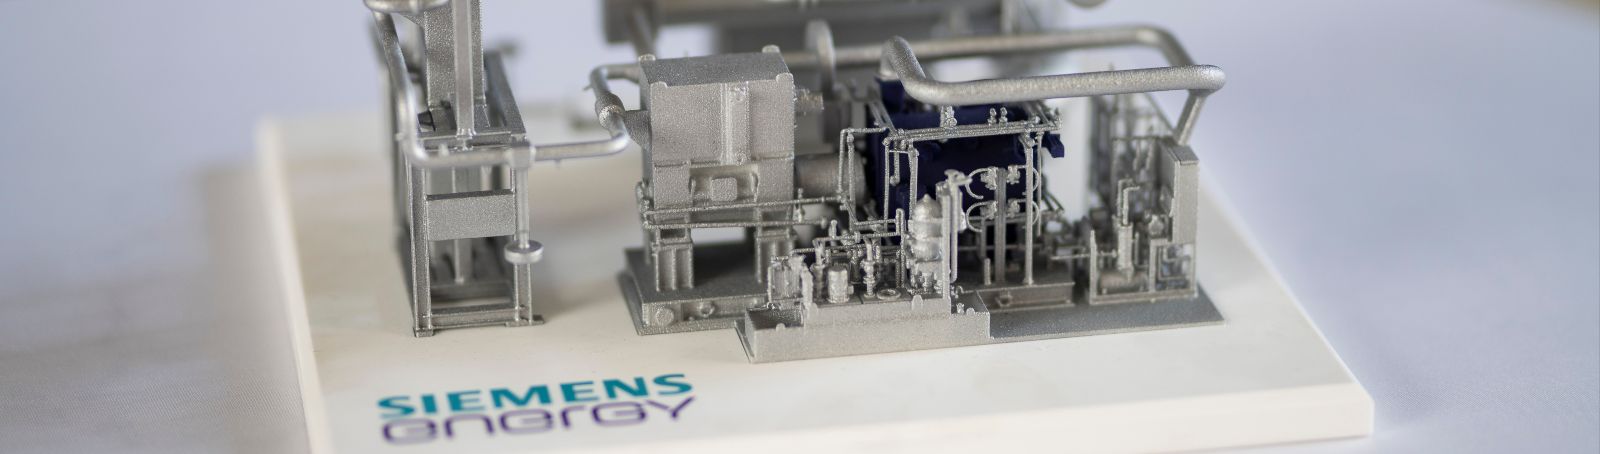 Dieses Modell zeigt die Wärmepumpe, gebaut von Siemens Energy, wie sie in Qwark3 zum Einsatz kommt.